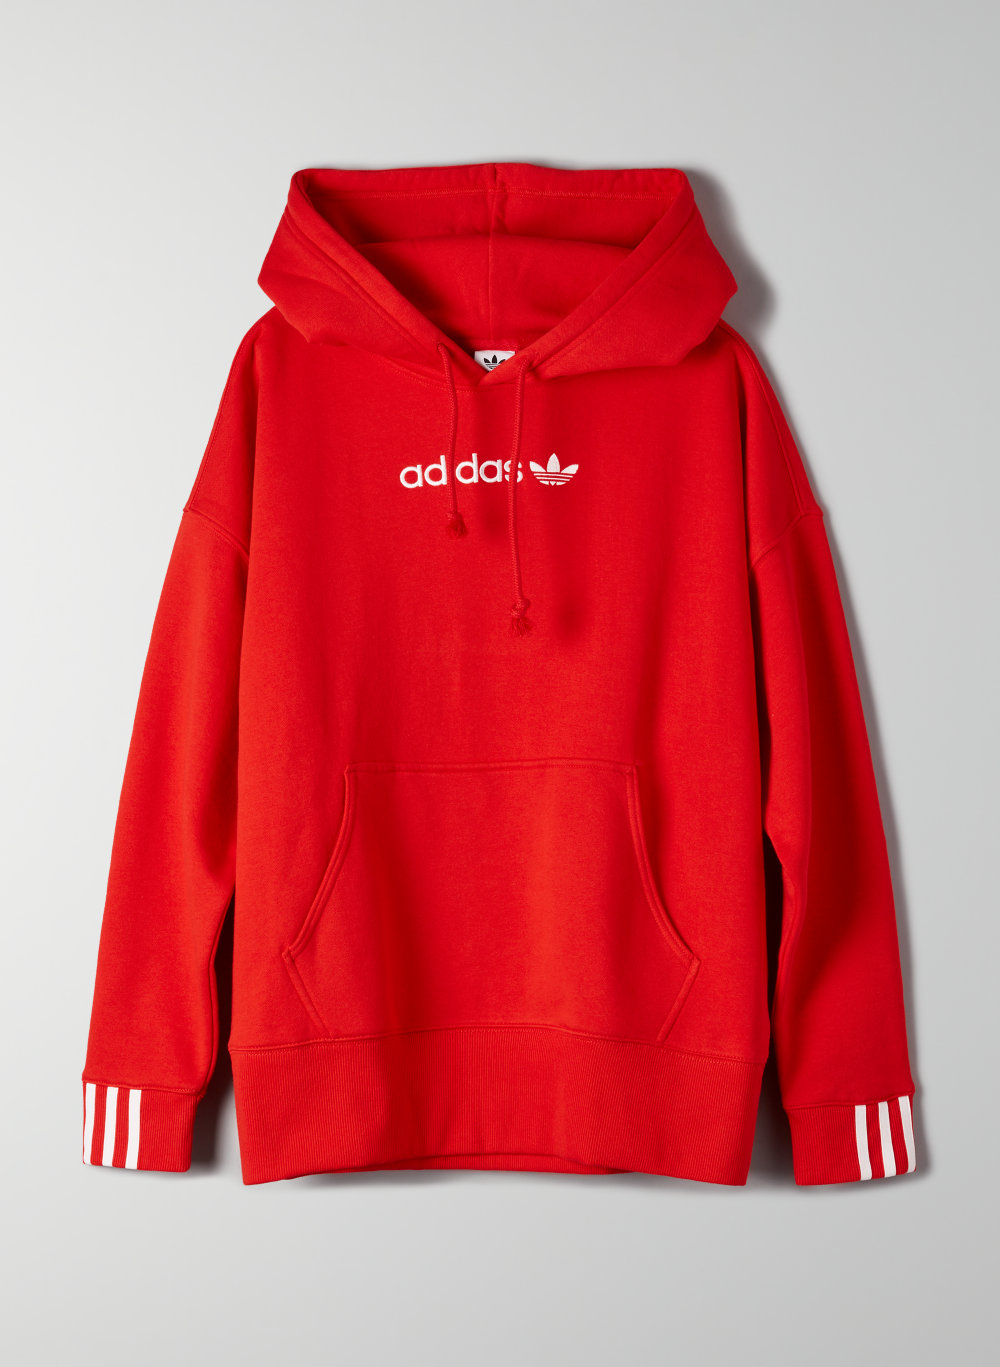 adidas red coeeze sweatshirt